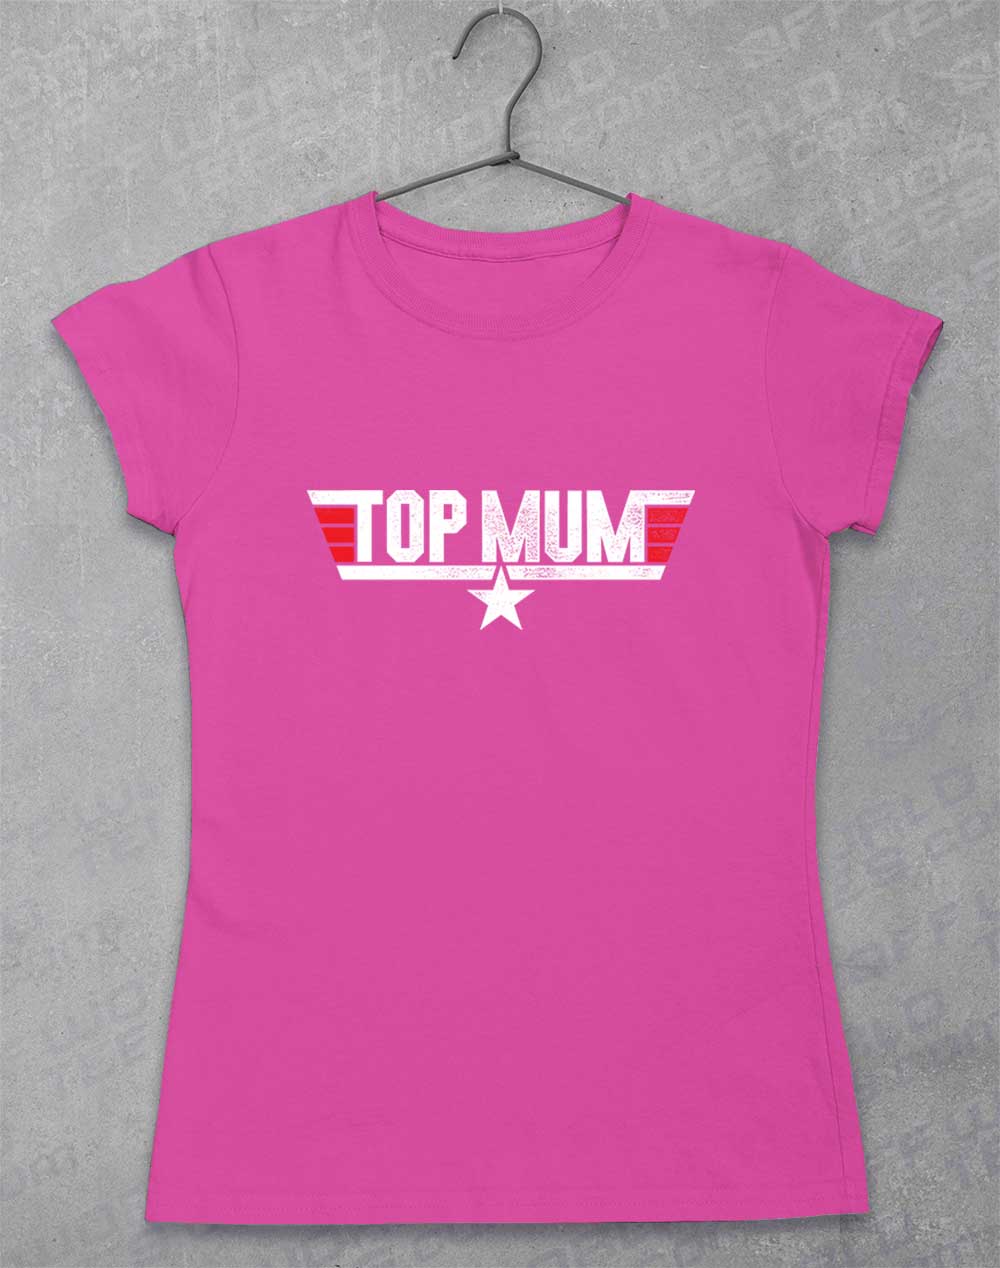 Azalea - Top Mum Women's T-Shirt